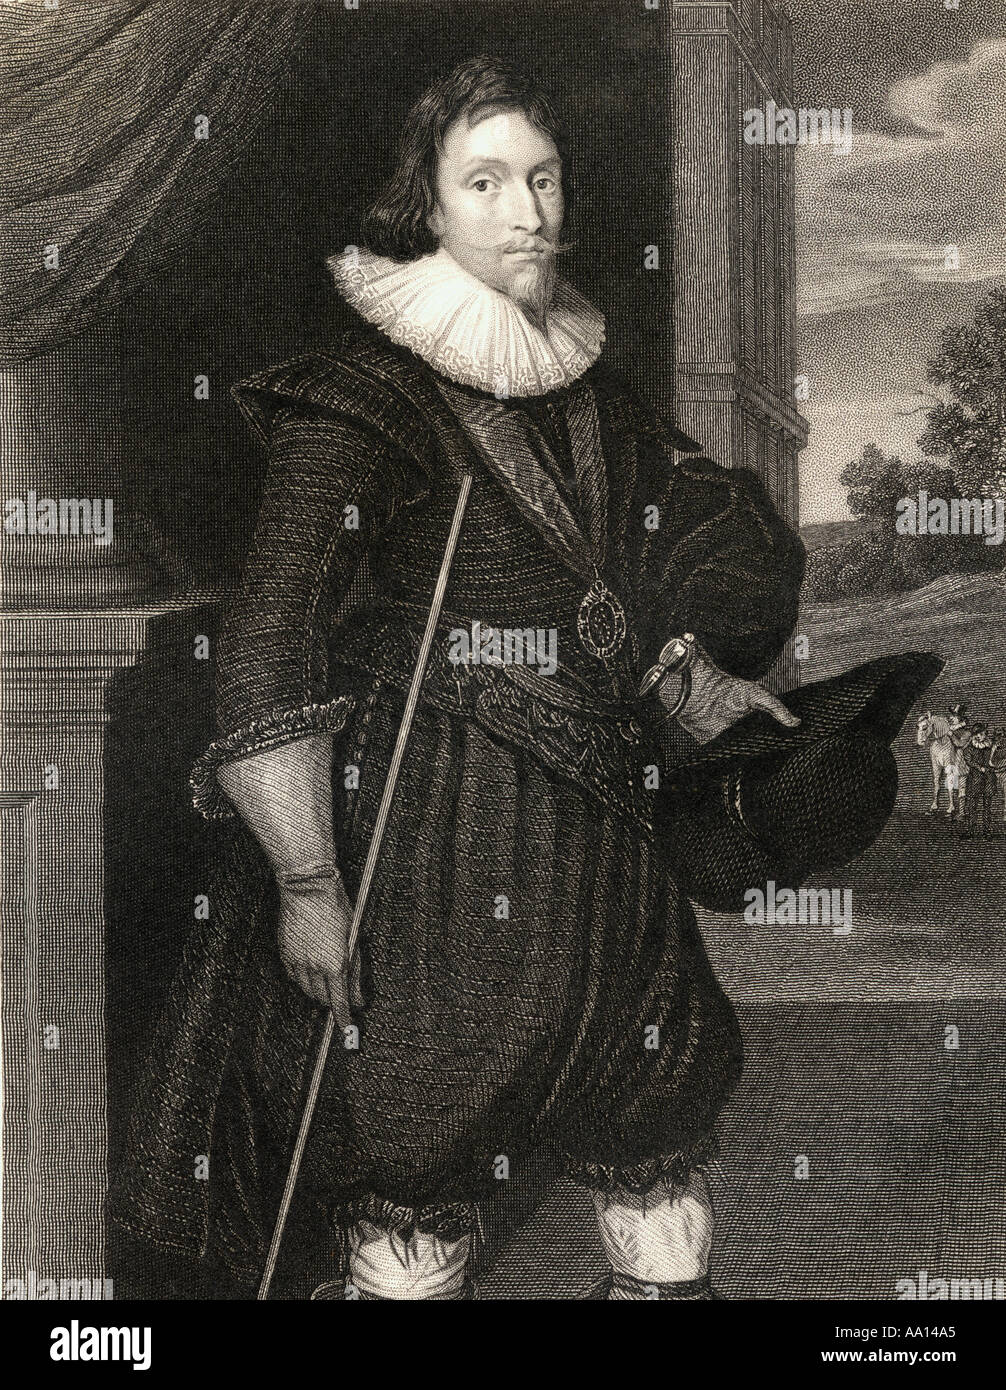 James Hamilton, 2e marquis d'Hamilton et 4e comte d'Arran, 1589 - 1625. Homme politique écossais. Banque D'Images